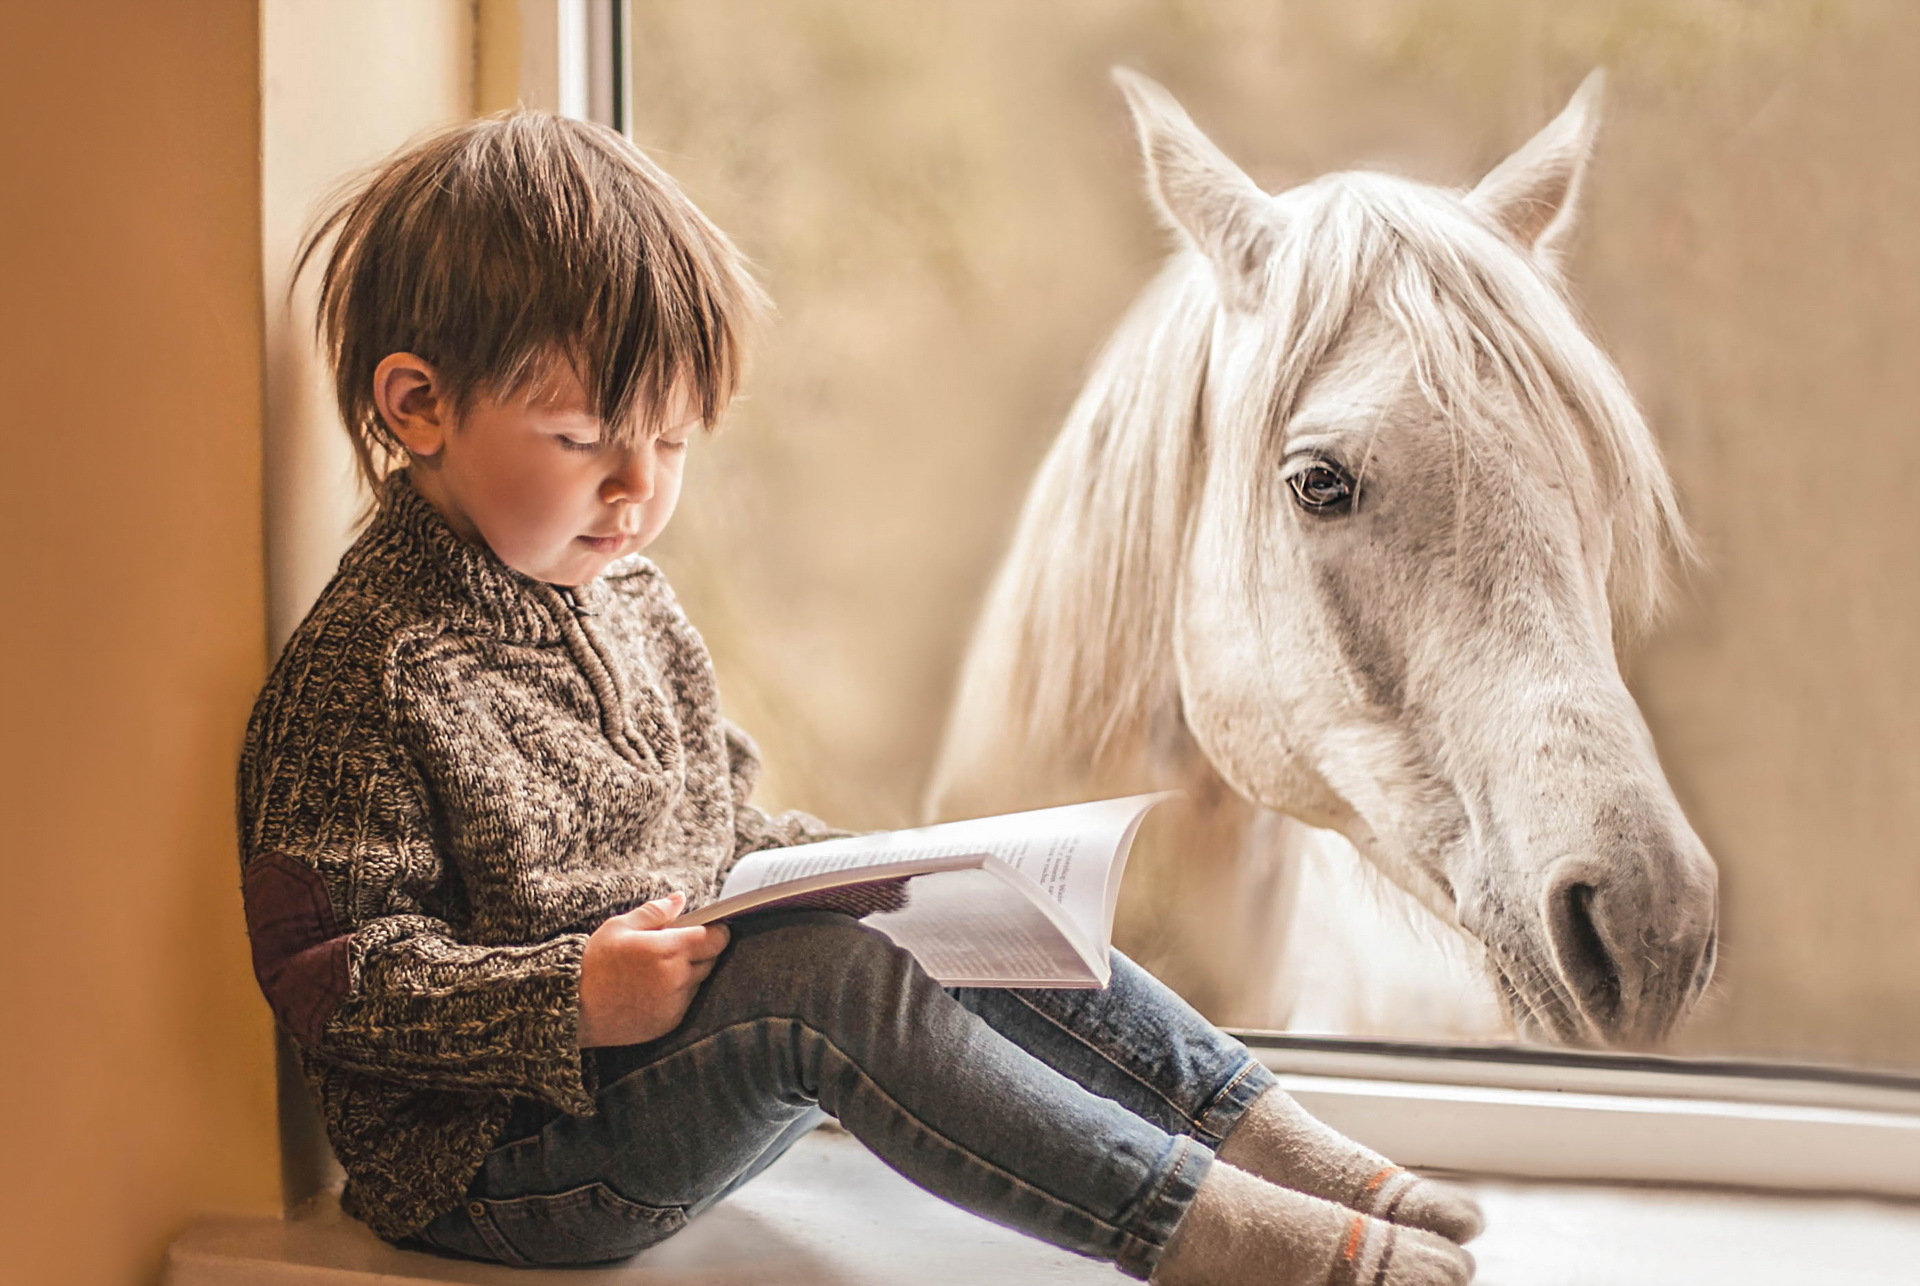 Читать про лошадей